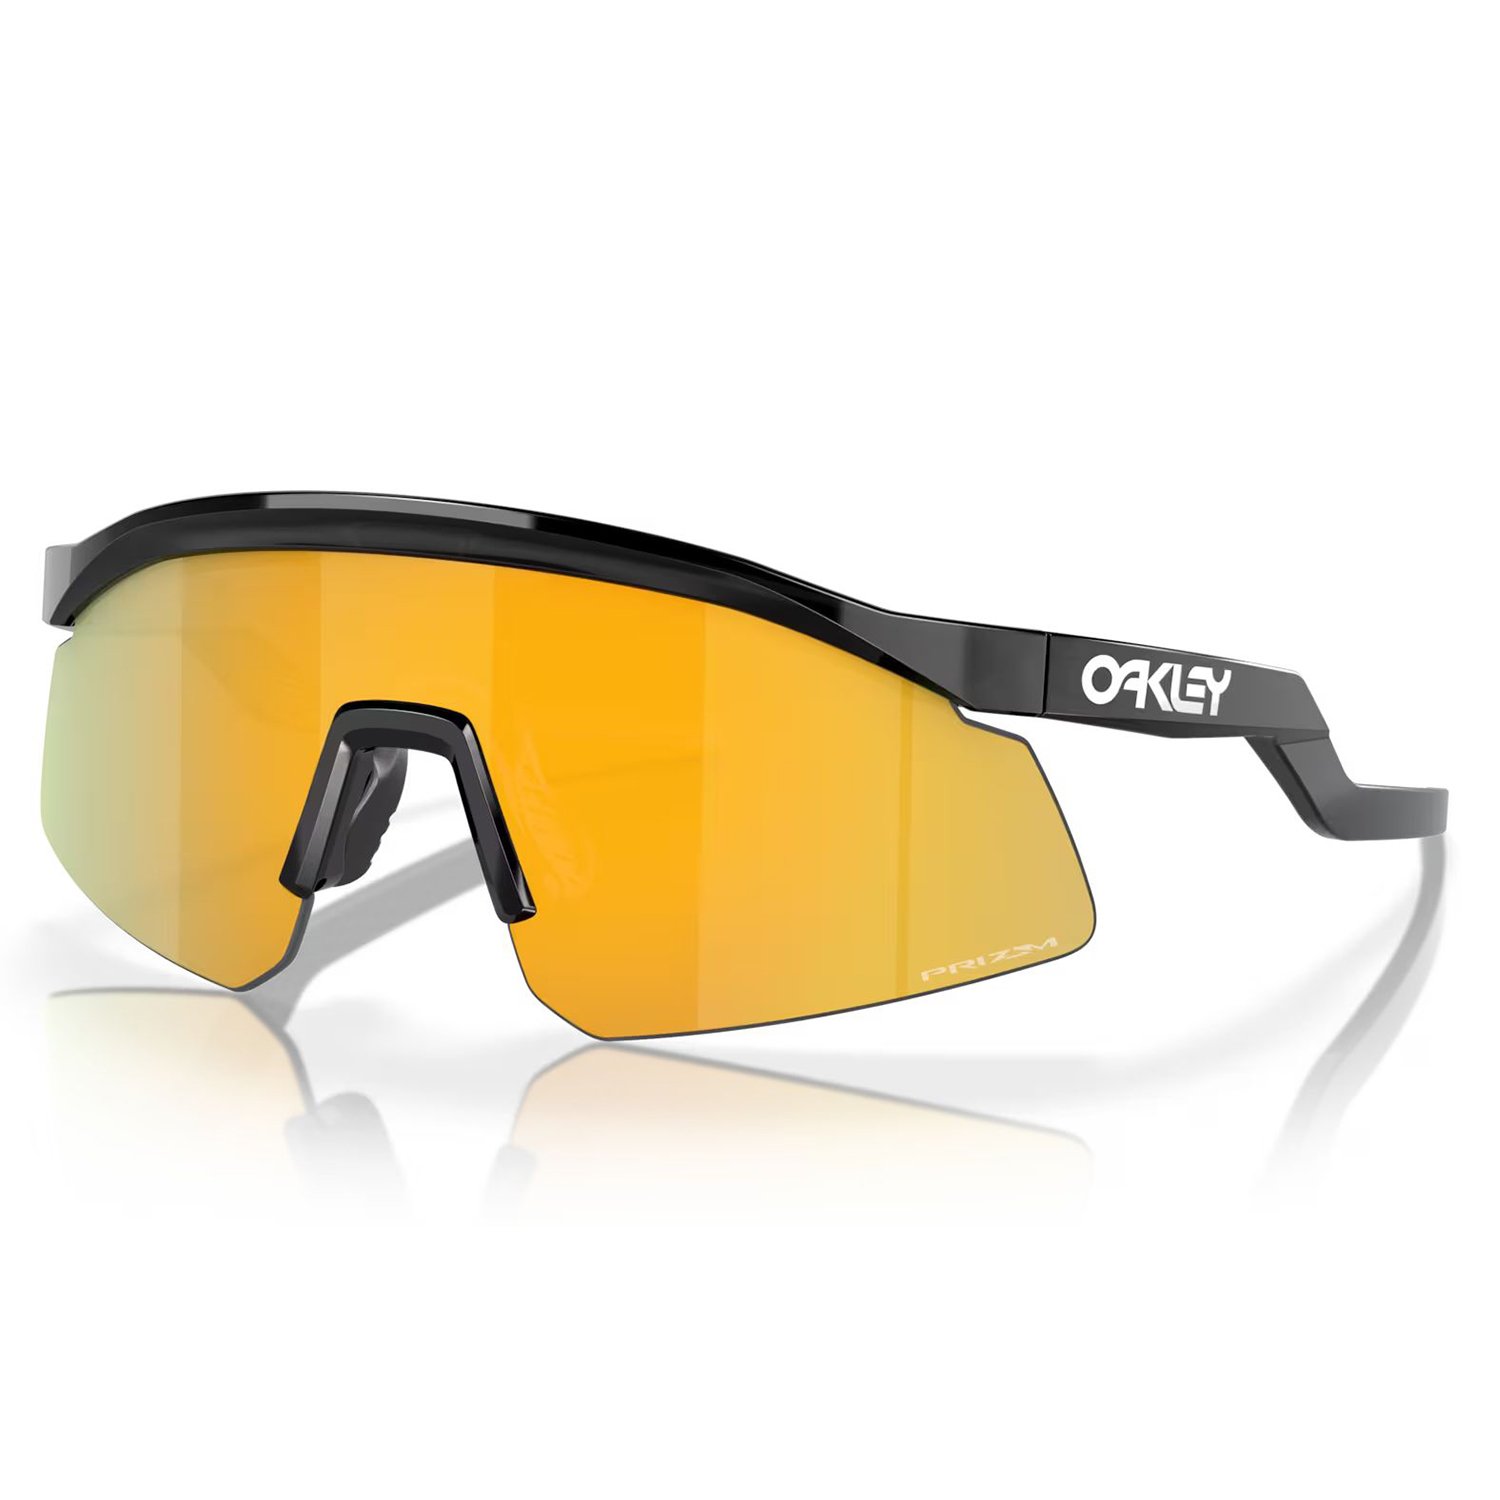 Oakley Hydra Güneş Gözlüğü - Turuncu - 1